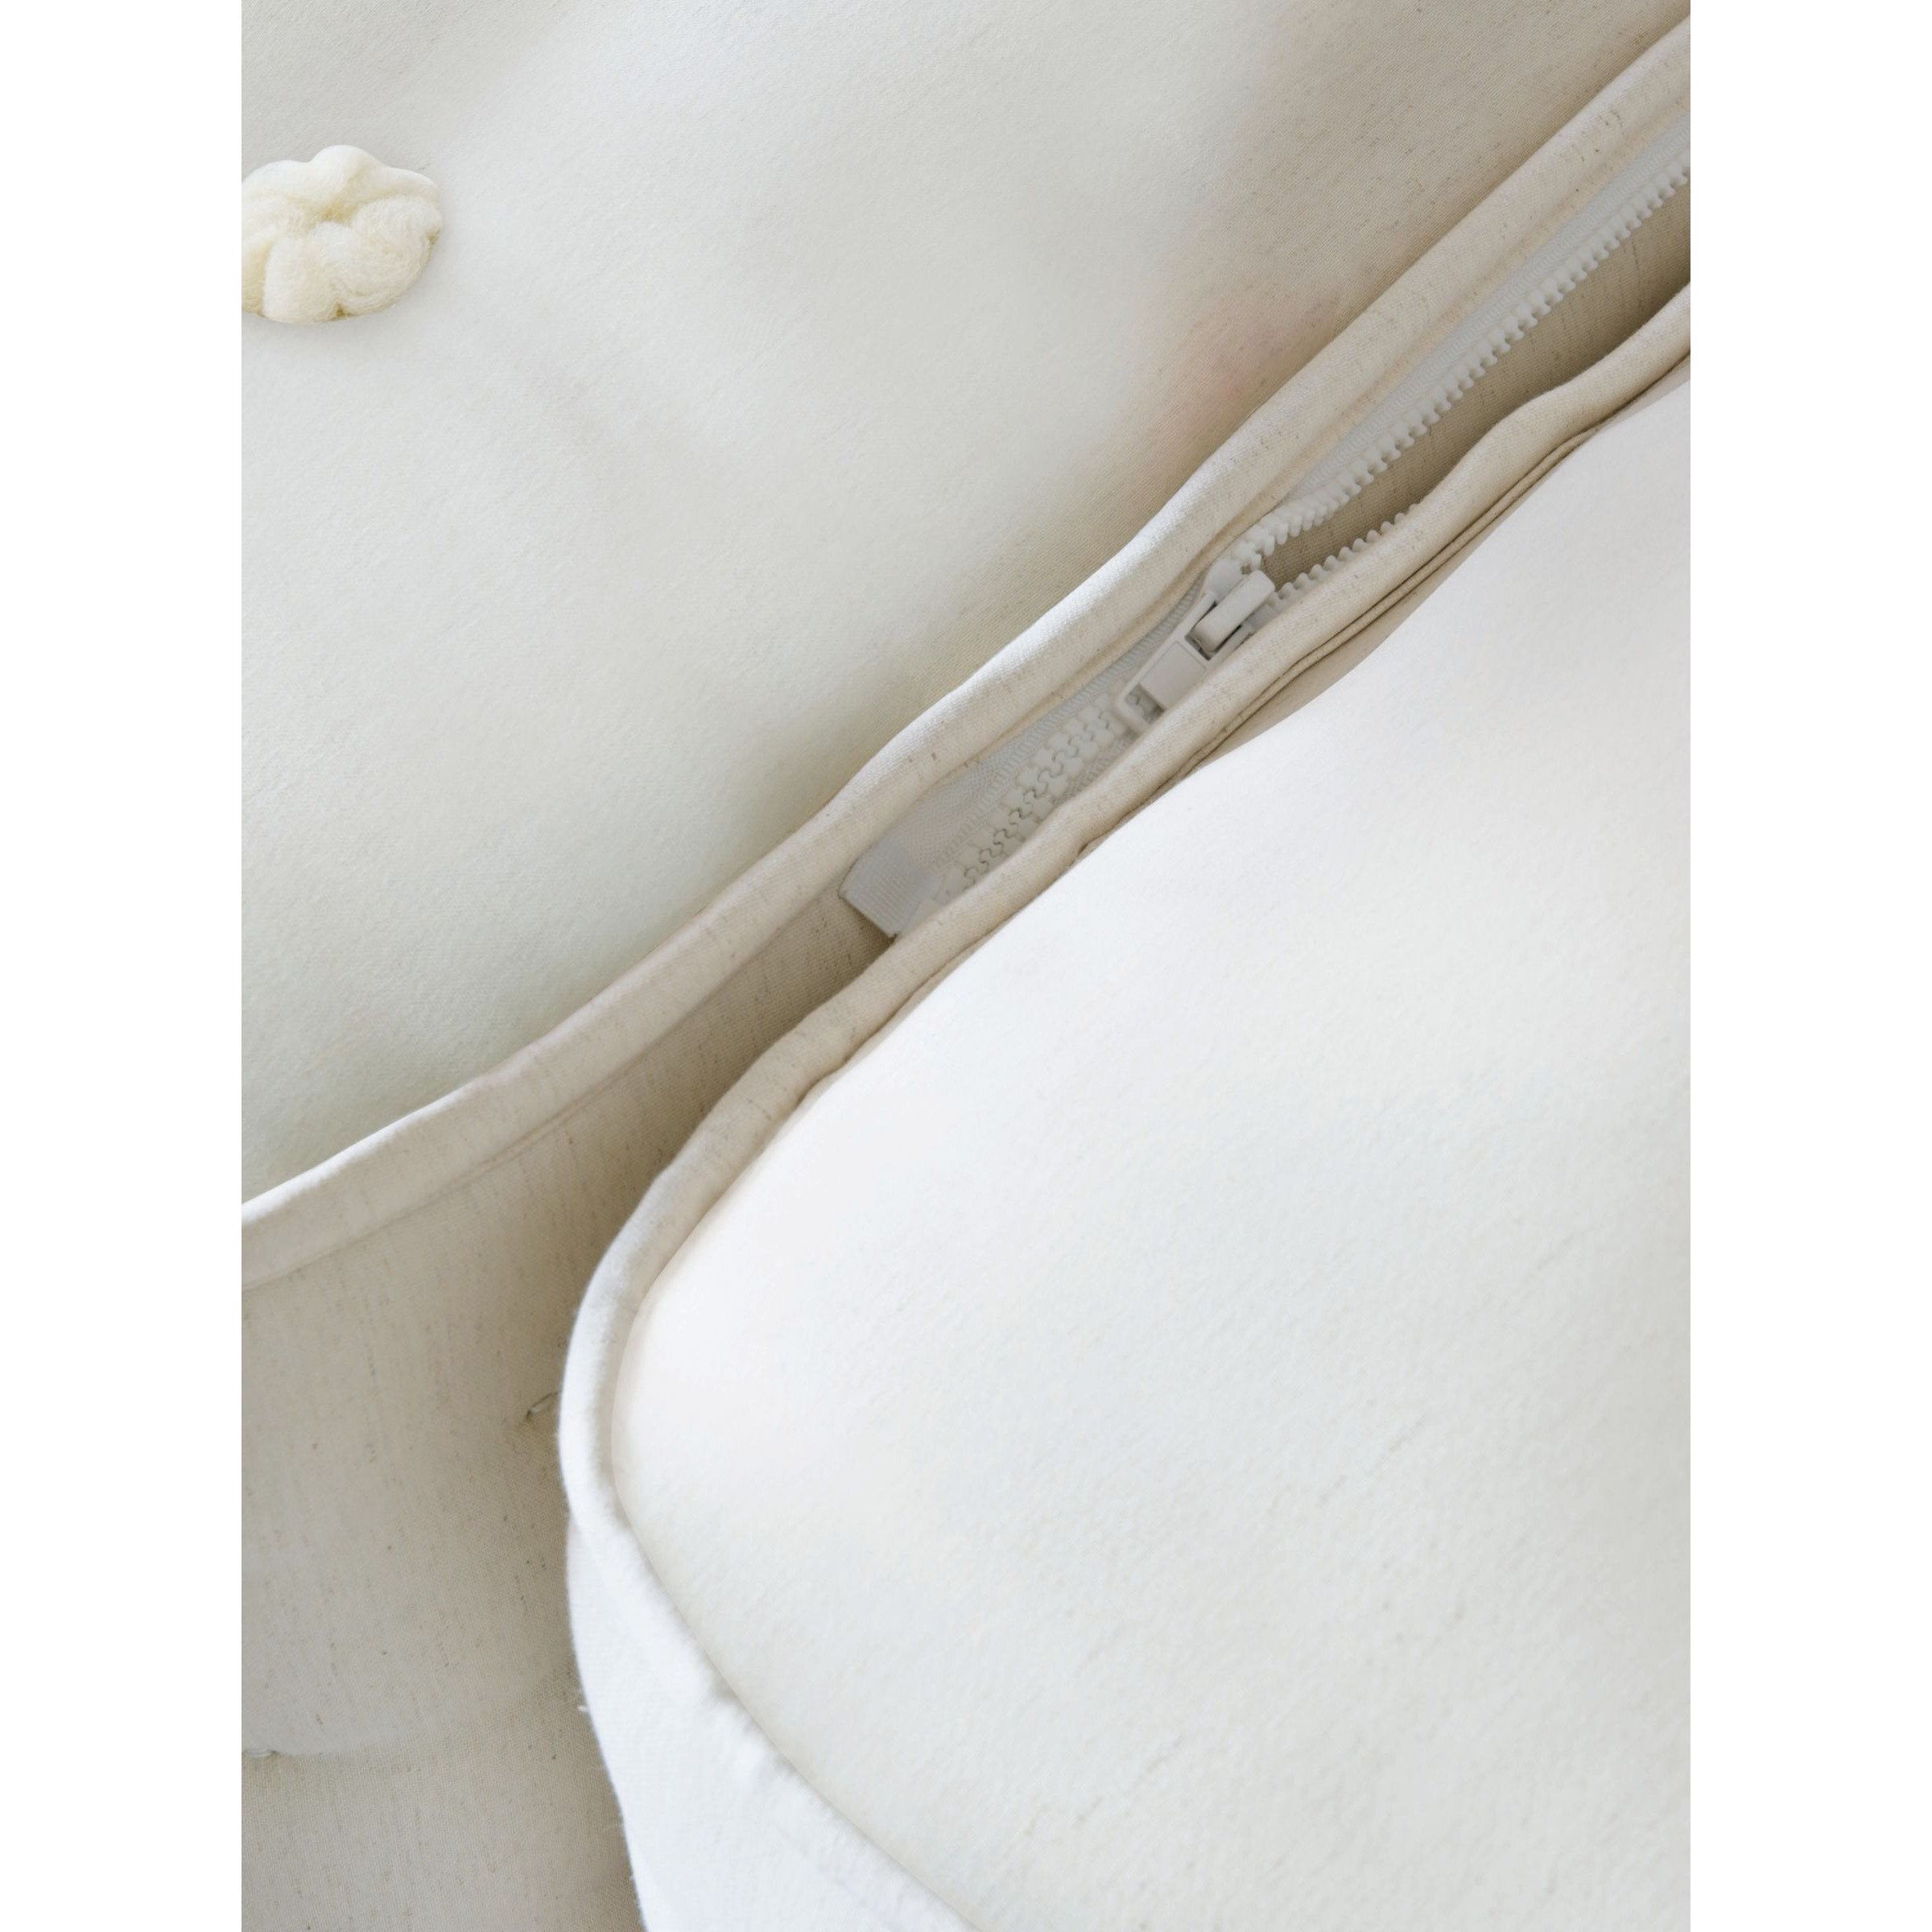 John Lewis Waitrose Wool NO. 3 Pocket Spring Zip Link Mattress, Soft/Medium Tension, Super King Size - image 1